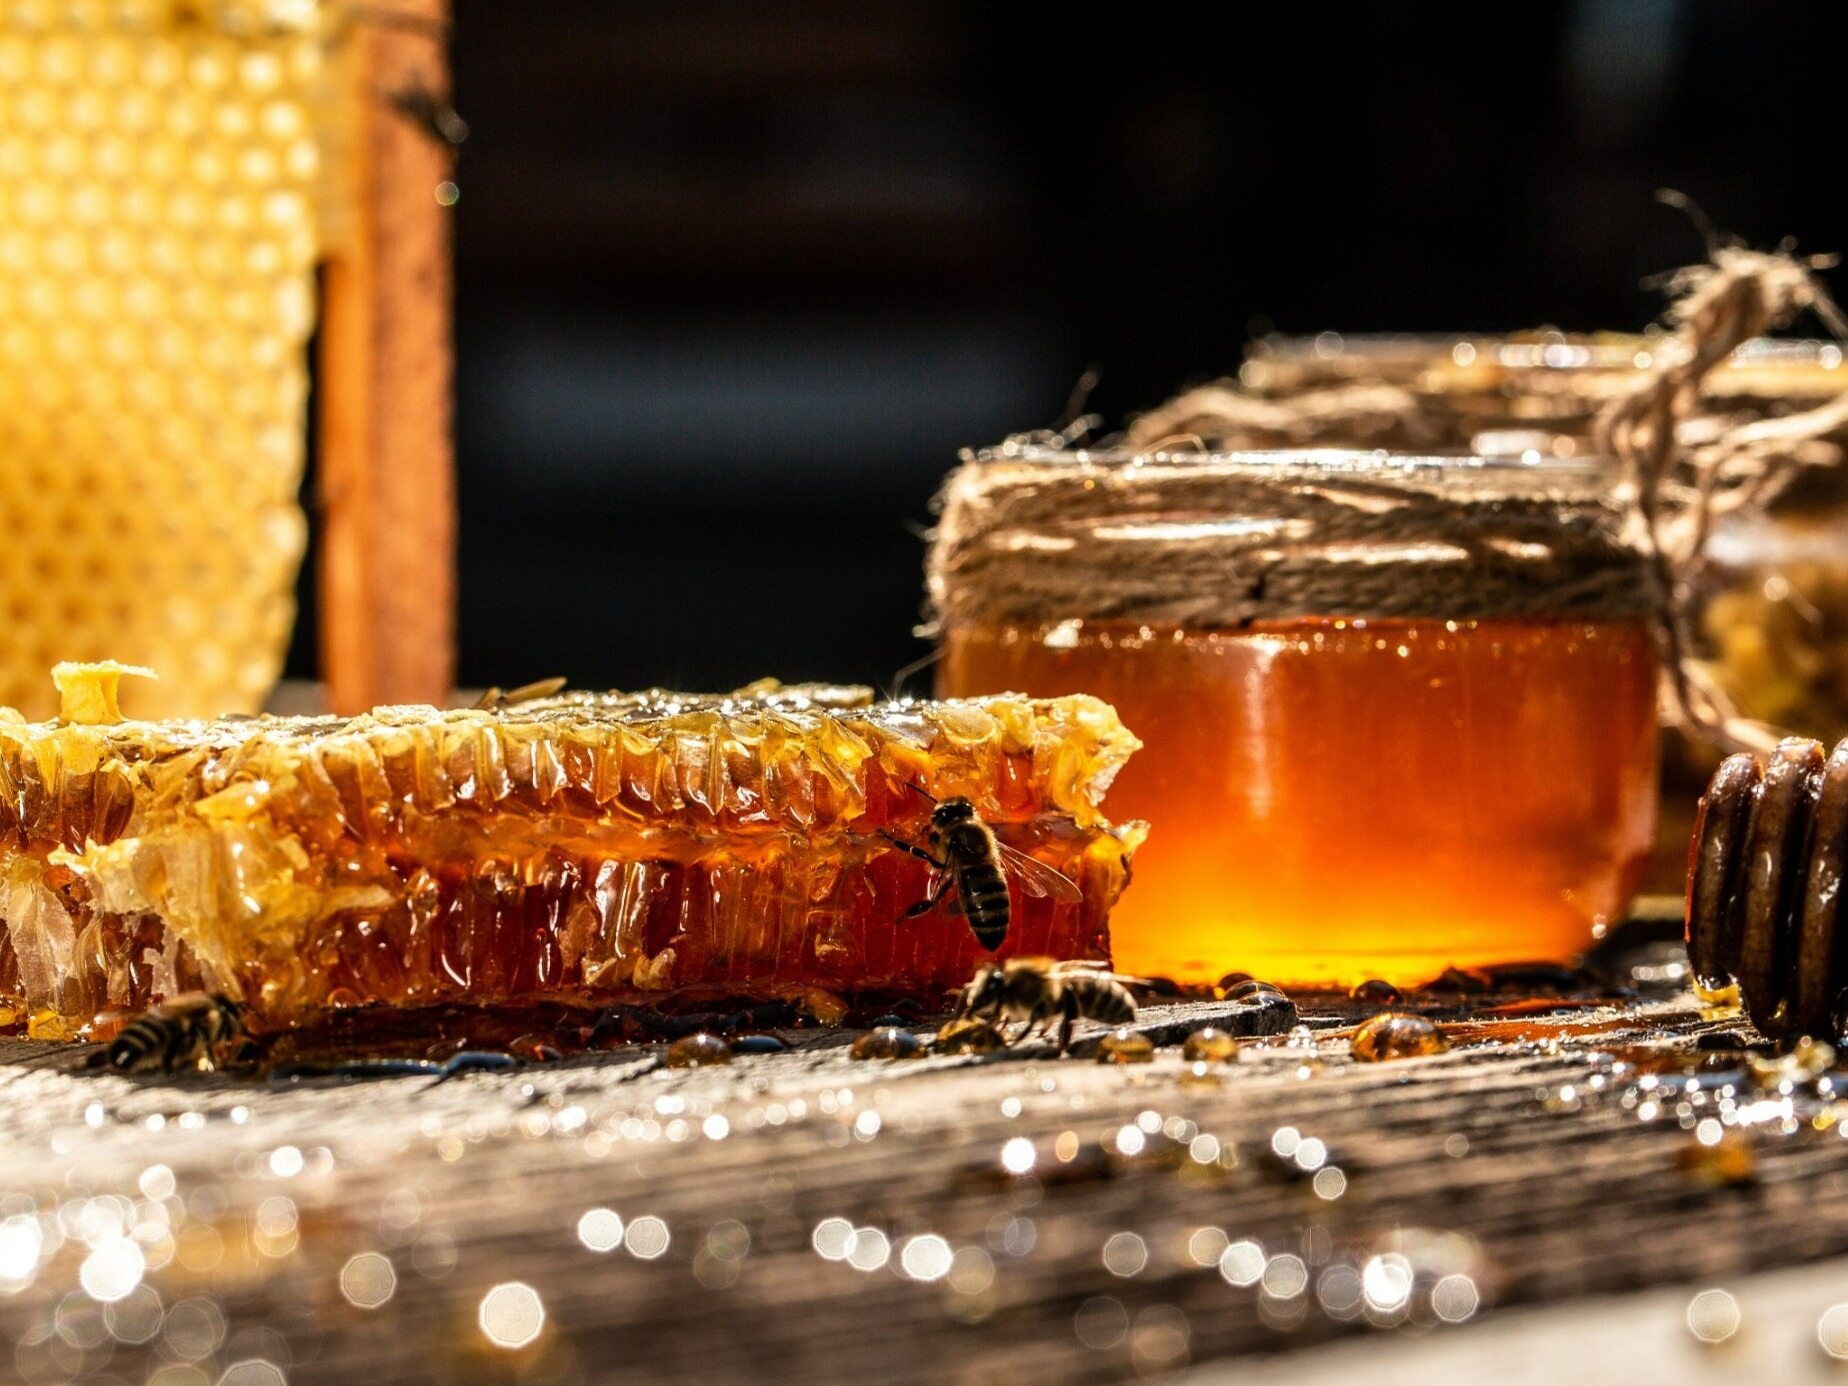 miód z ukrainy miażdży polskich pszczelarzy? mowa o skandalu